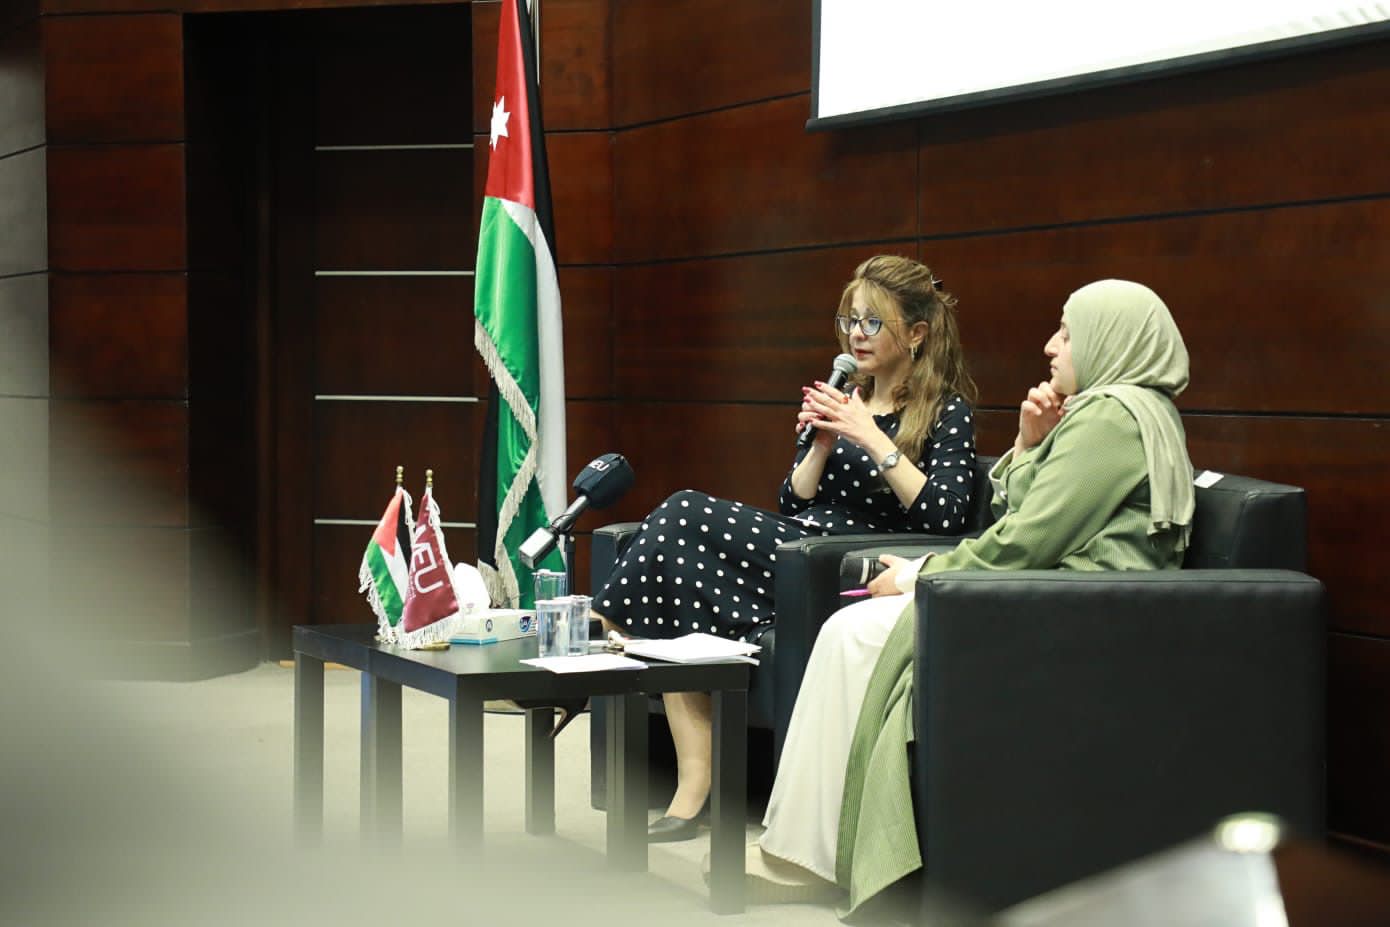 رئيسة "الشرق الأوسط" خلال لقائها أعضاء الهيئة التدريسية: ماضون في تنفيذ استراتيجية تجويد العملية التعليمية  